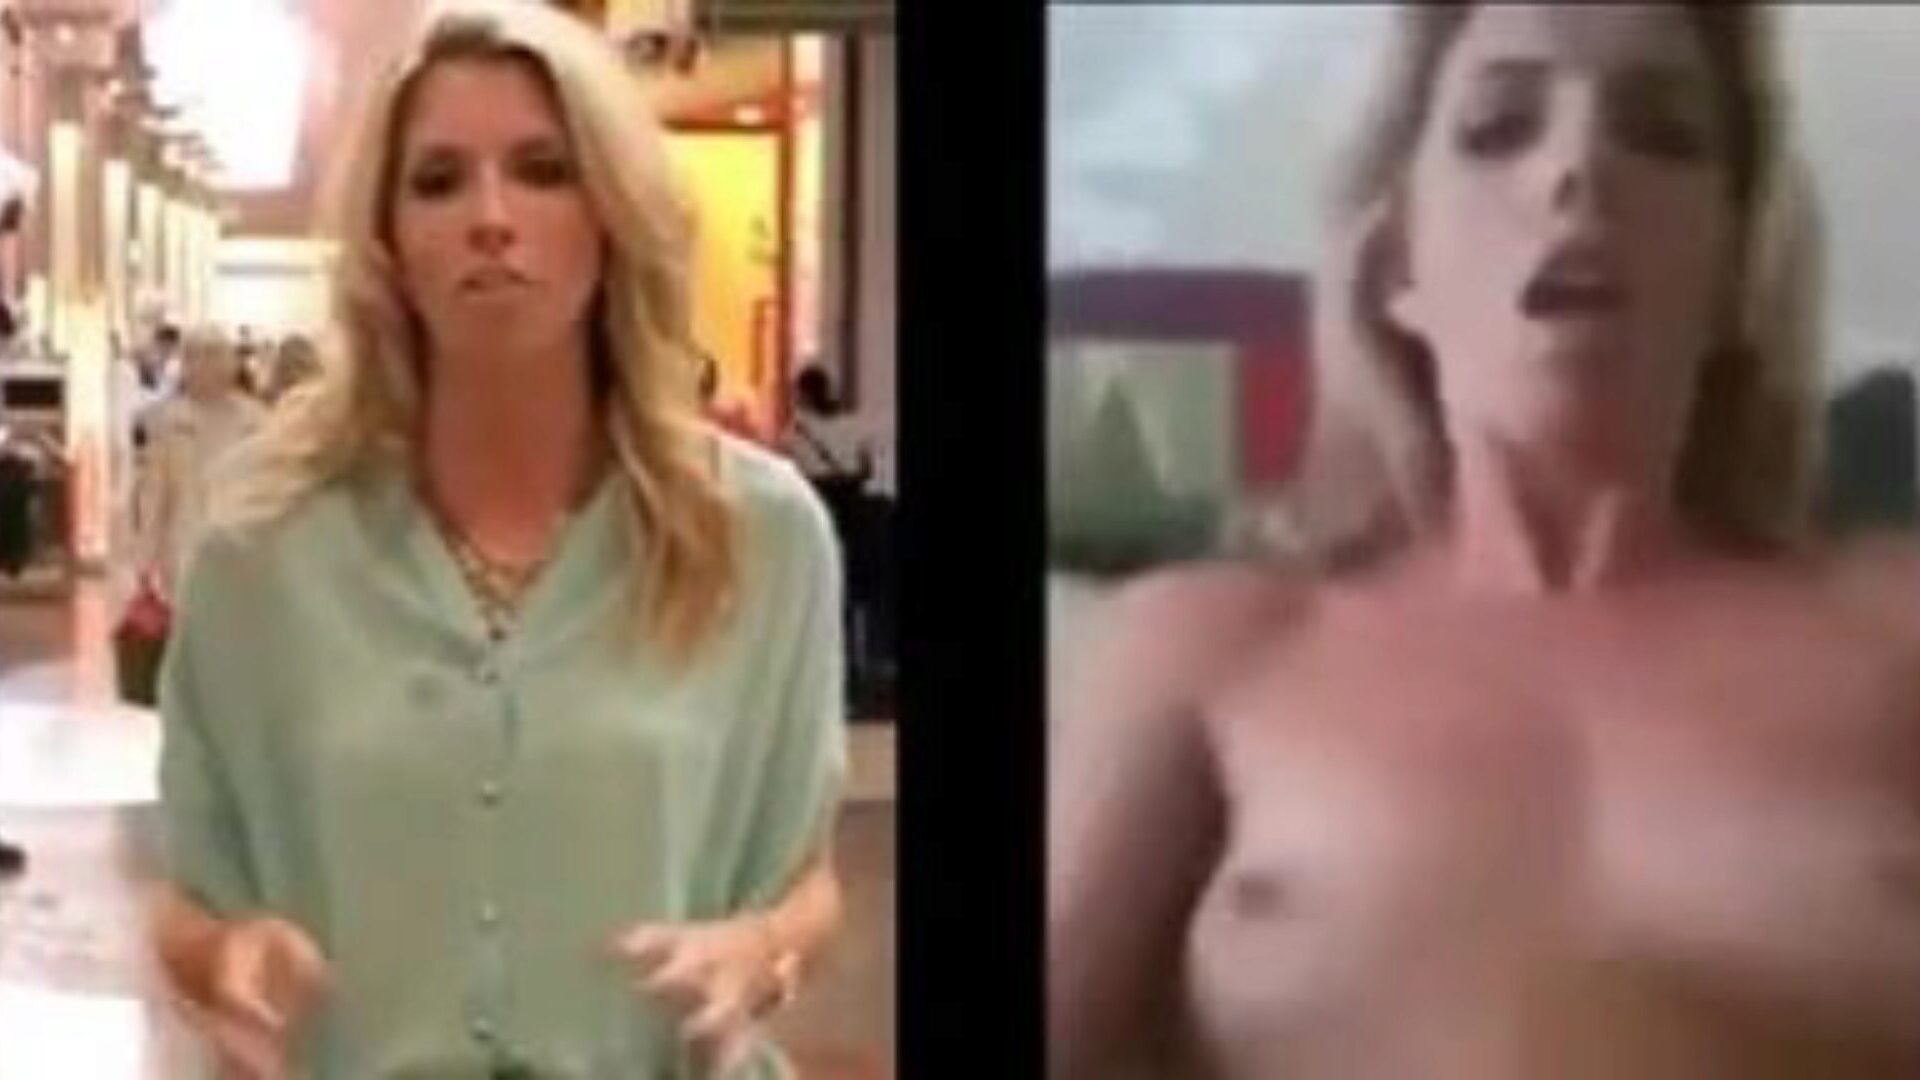 fuite journaliste de télévision masturbation fuite journaliste de télévision chaude habillée nue et descendant